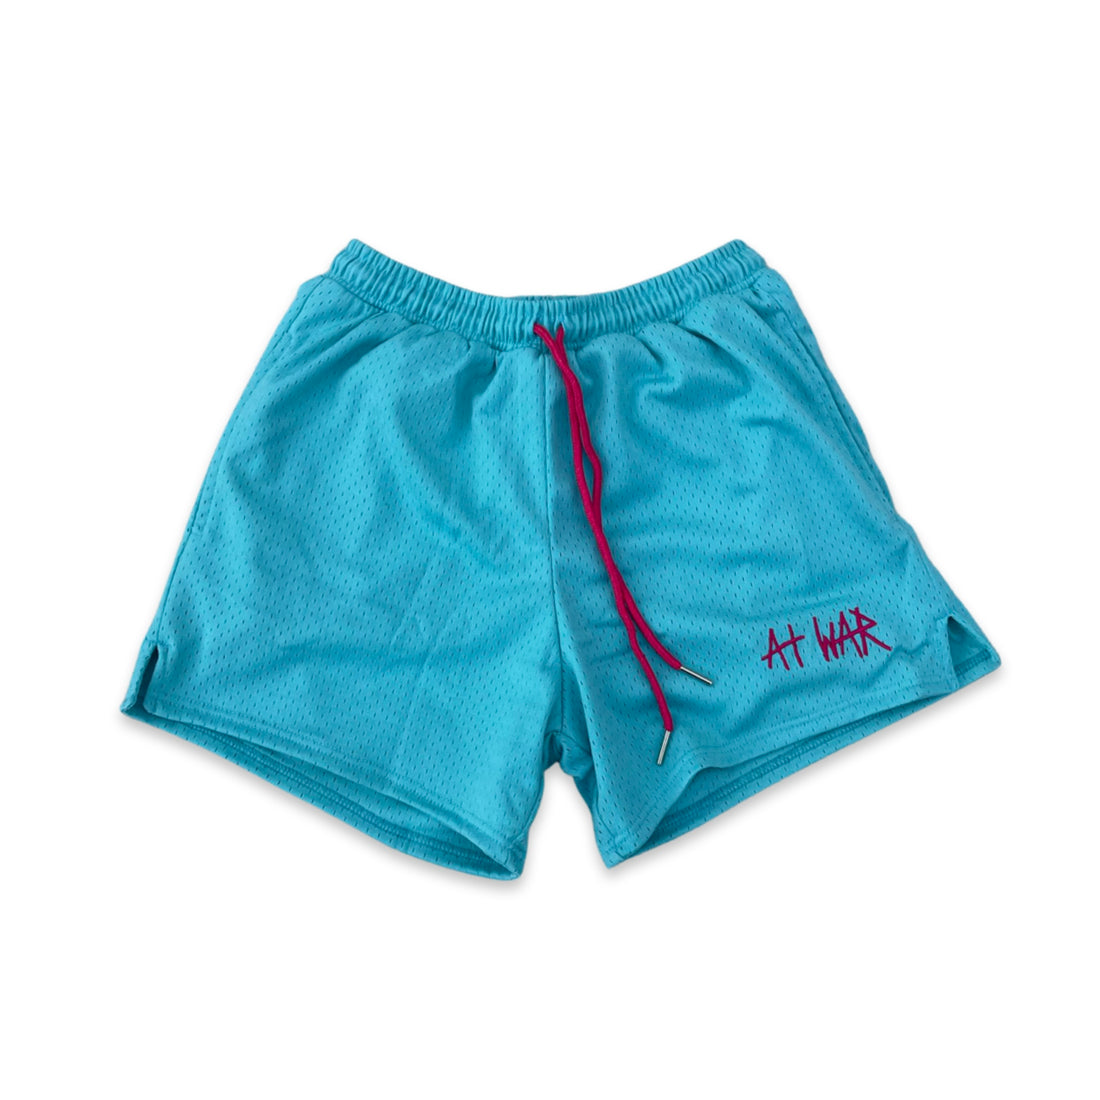 Miami Vice Everyday Shorts